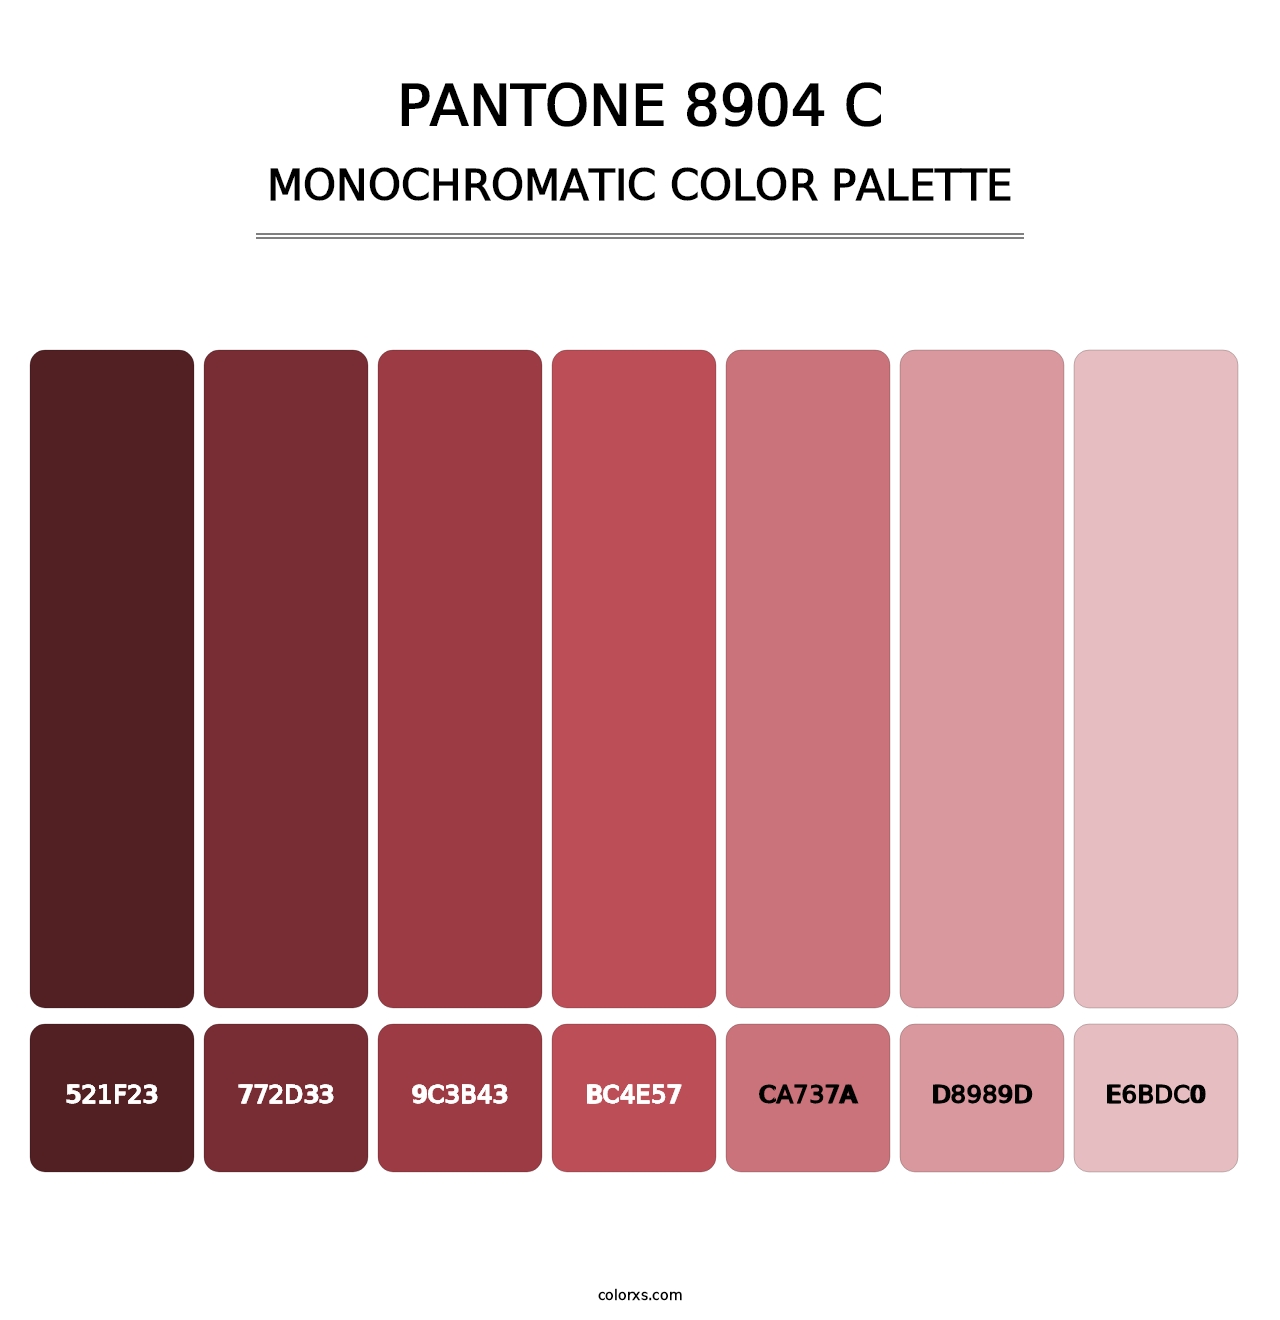 PANTONE 8904 C - Monochromatic Color Palette